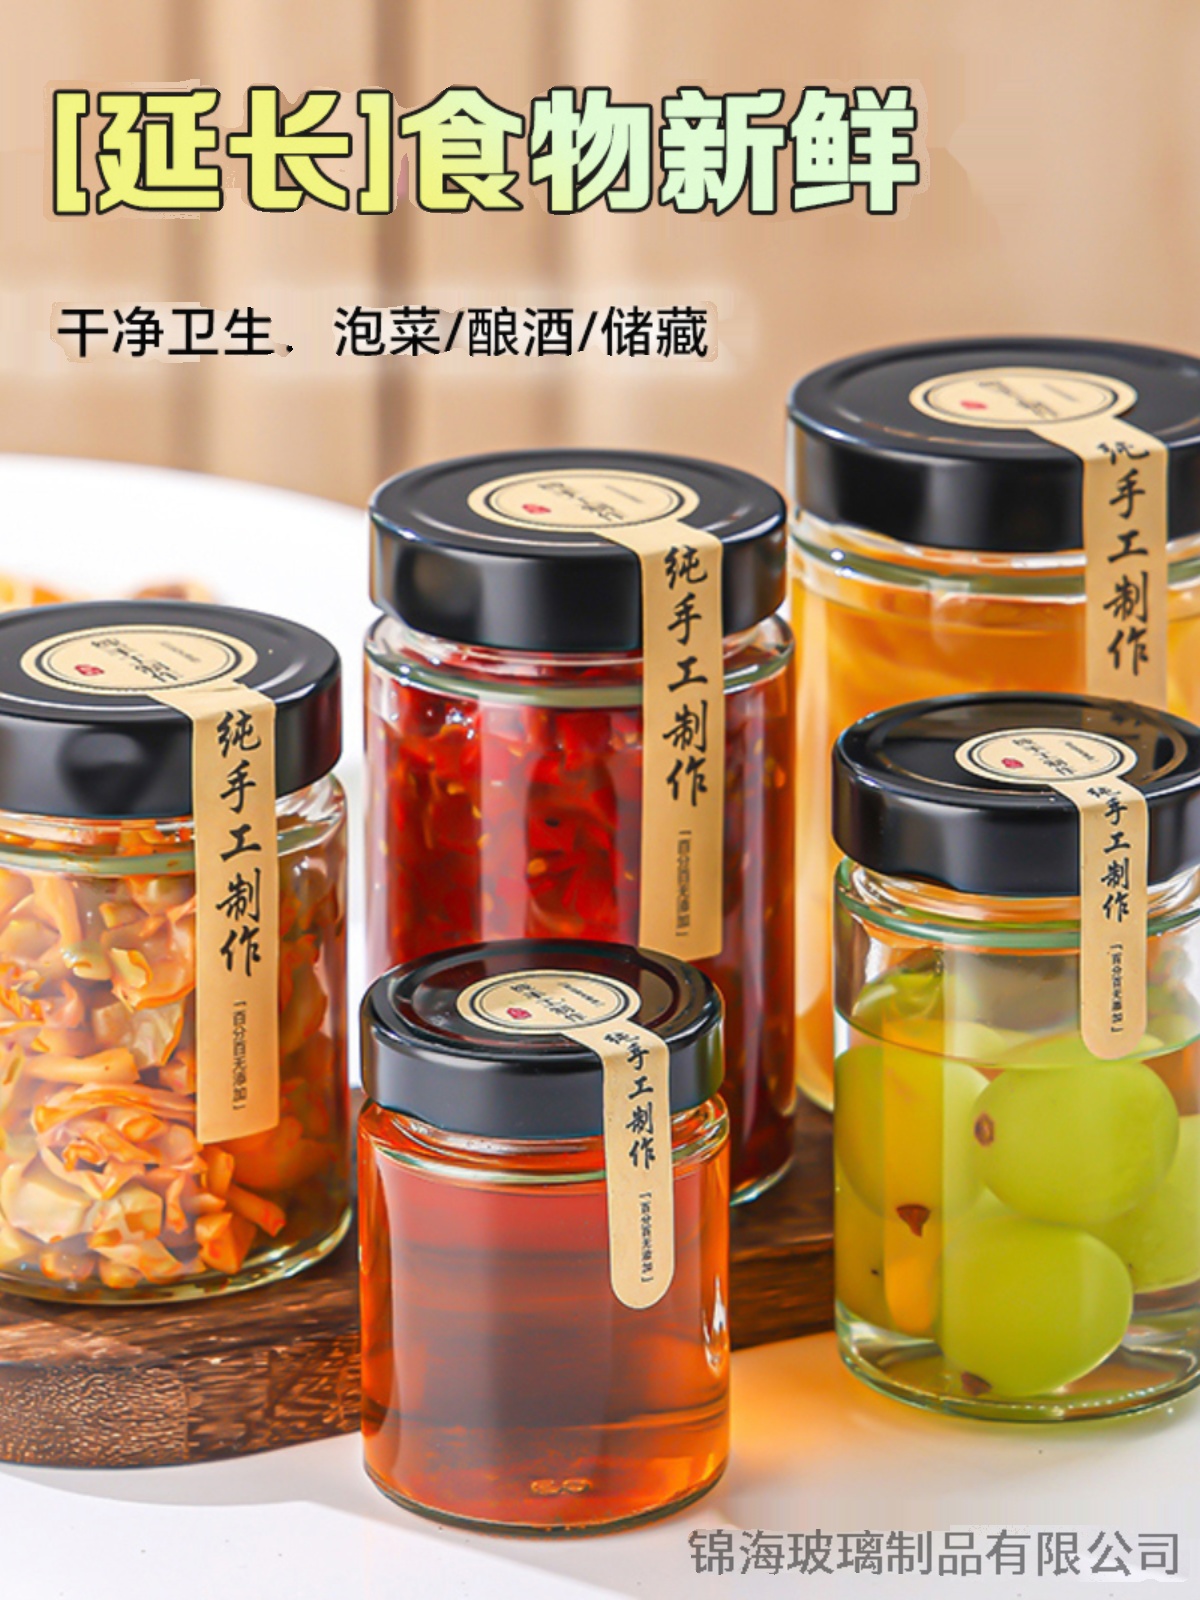 高蓋玻璃密封罐商用食品級檸檬秋梨膏辣椒果醬蜂蜜容器